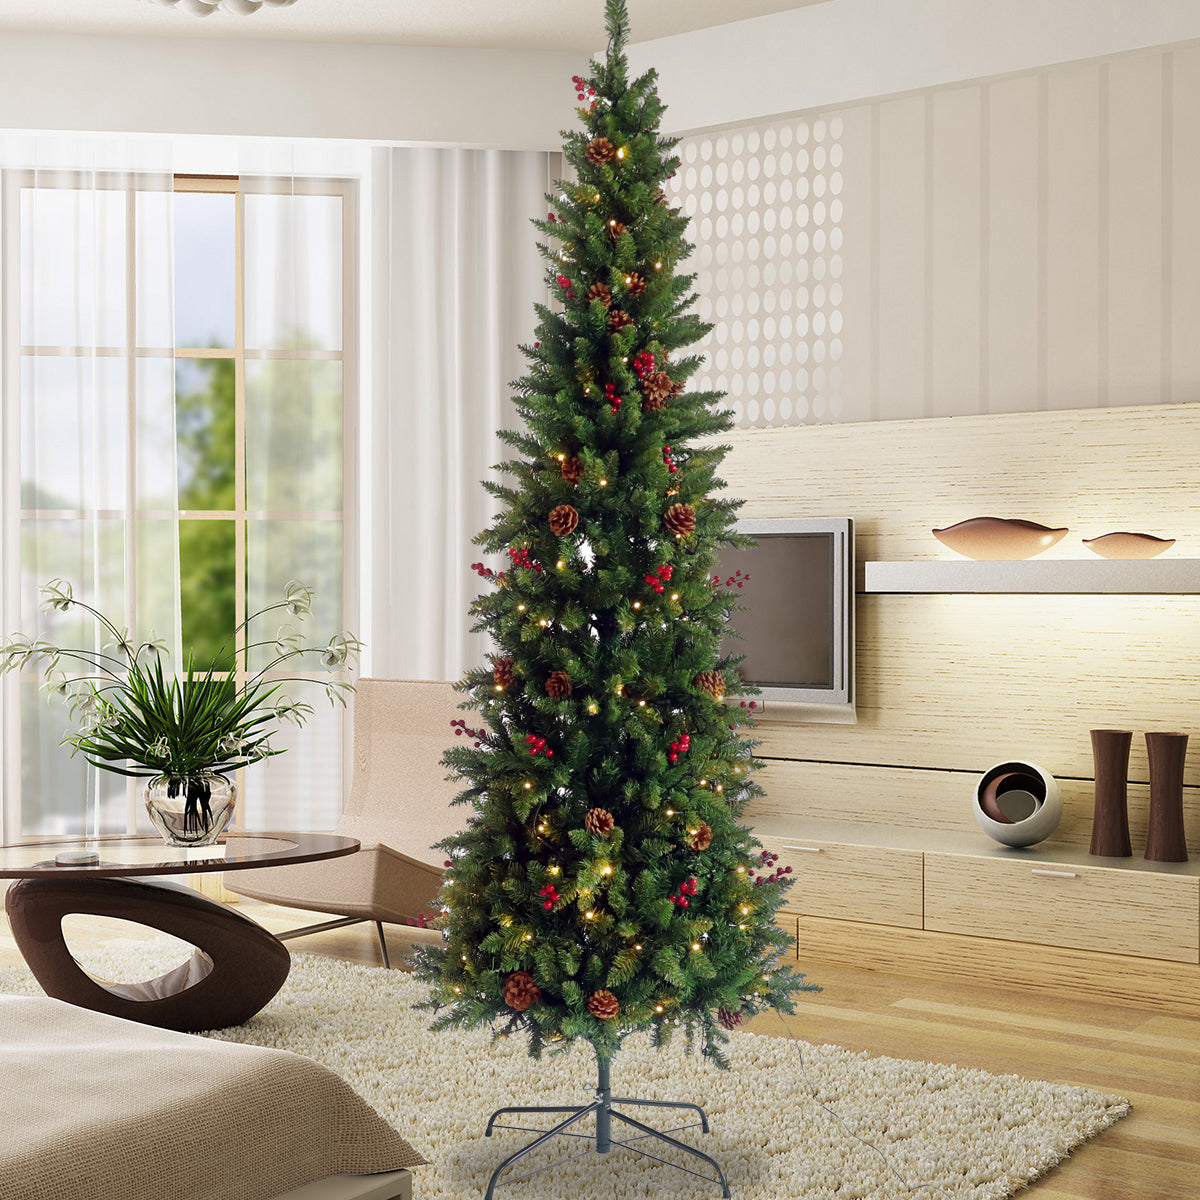 Slim Christmas Tree